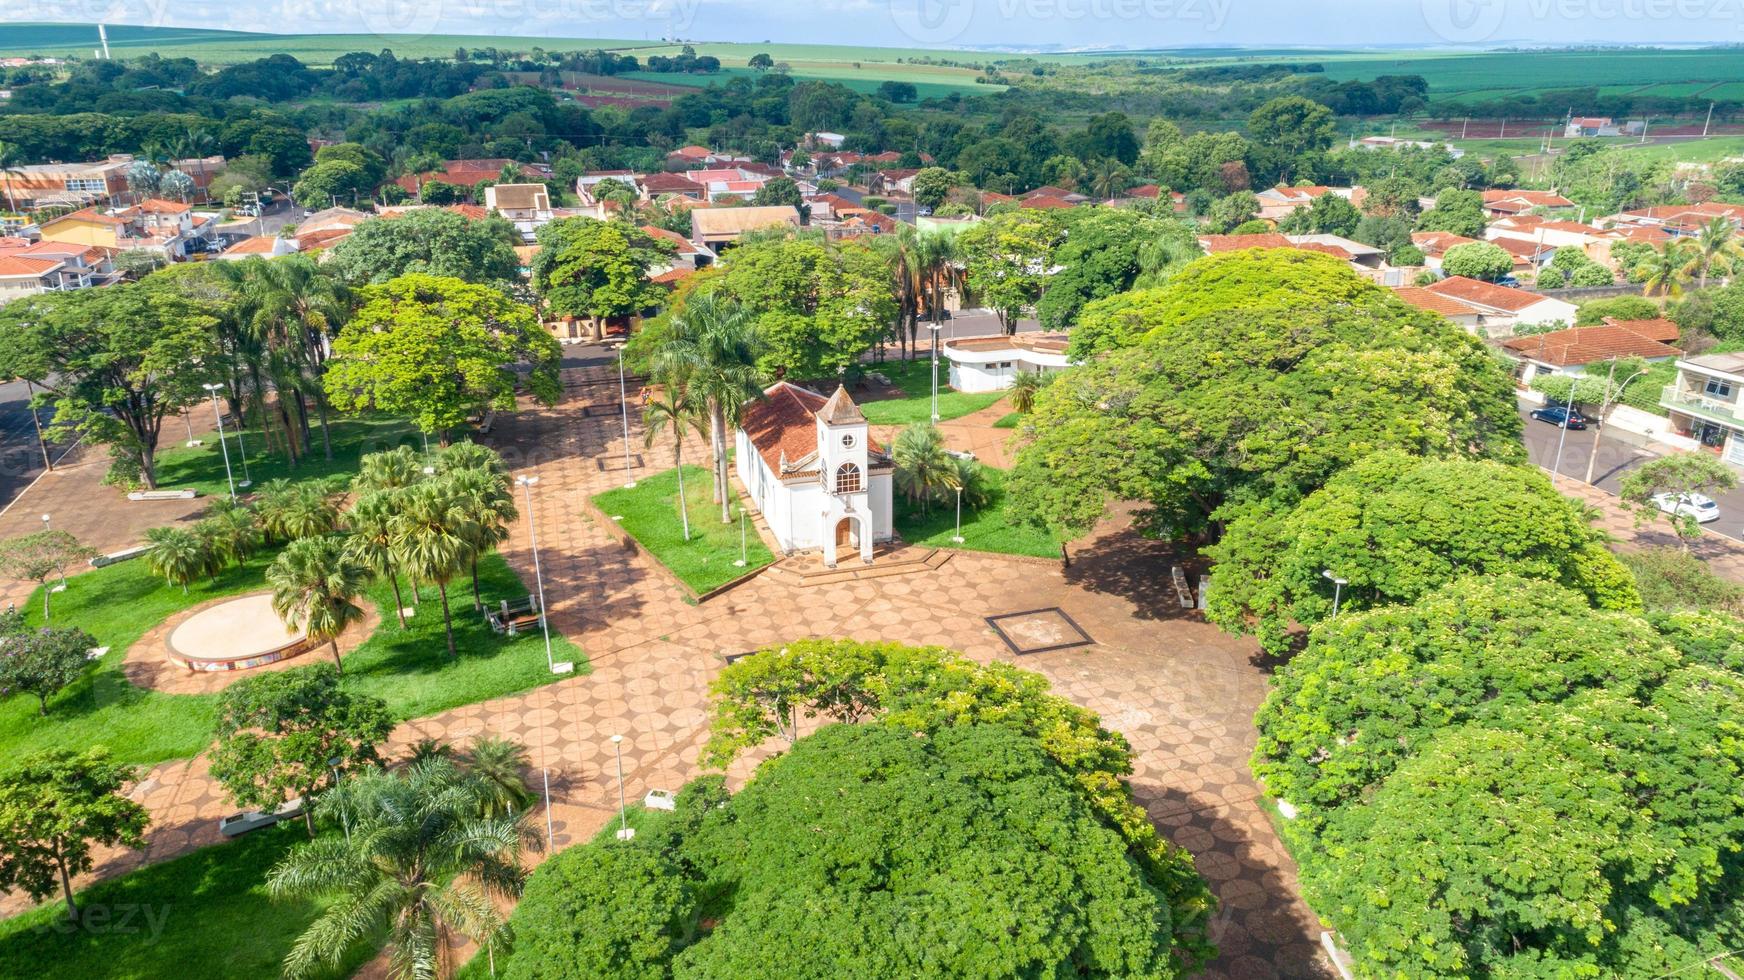 luchtfoto van het stadscentrum van pradopolis, sao paulo, brazilië. je kunt de moederkerk in het stadscentrum zien. foto